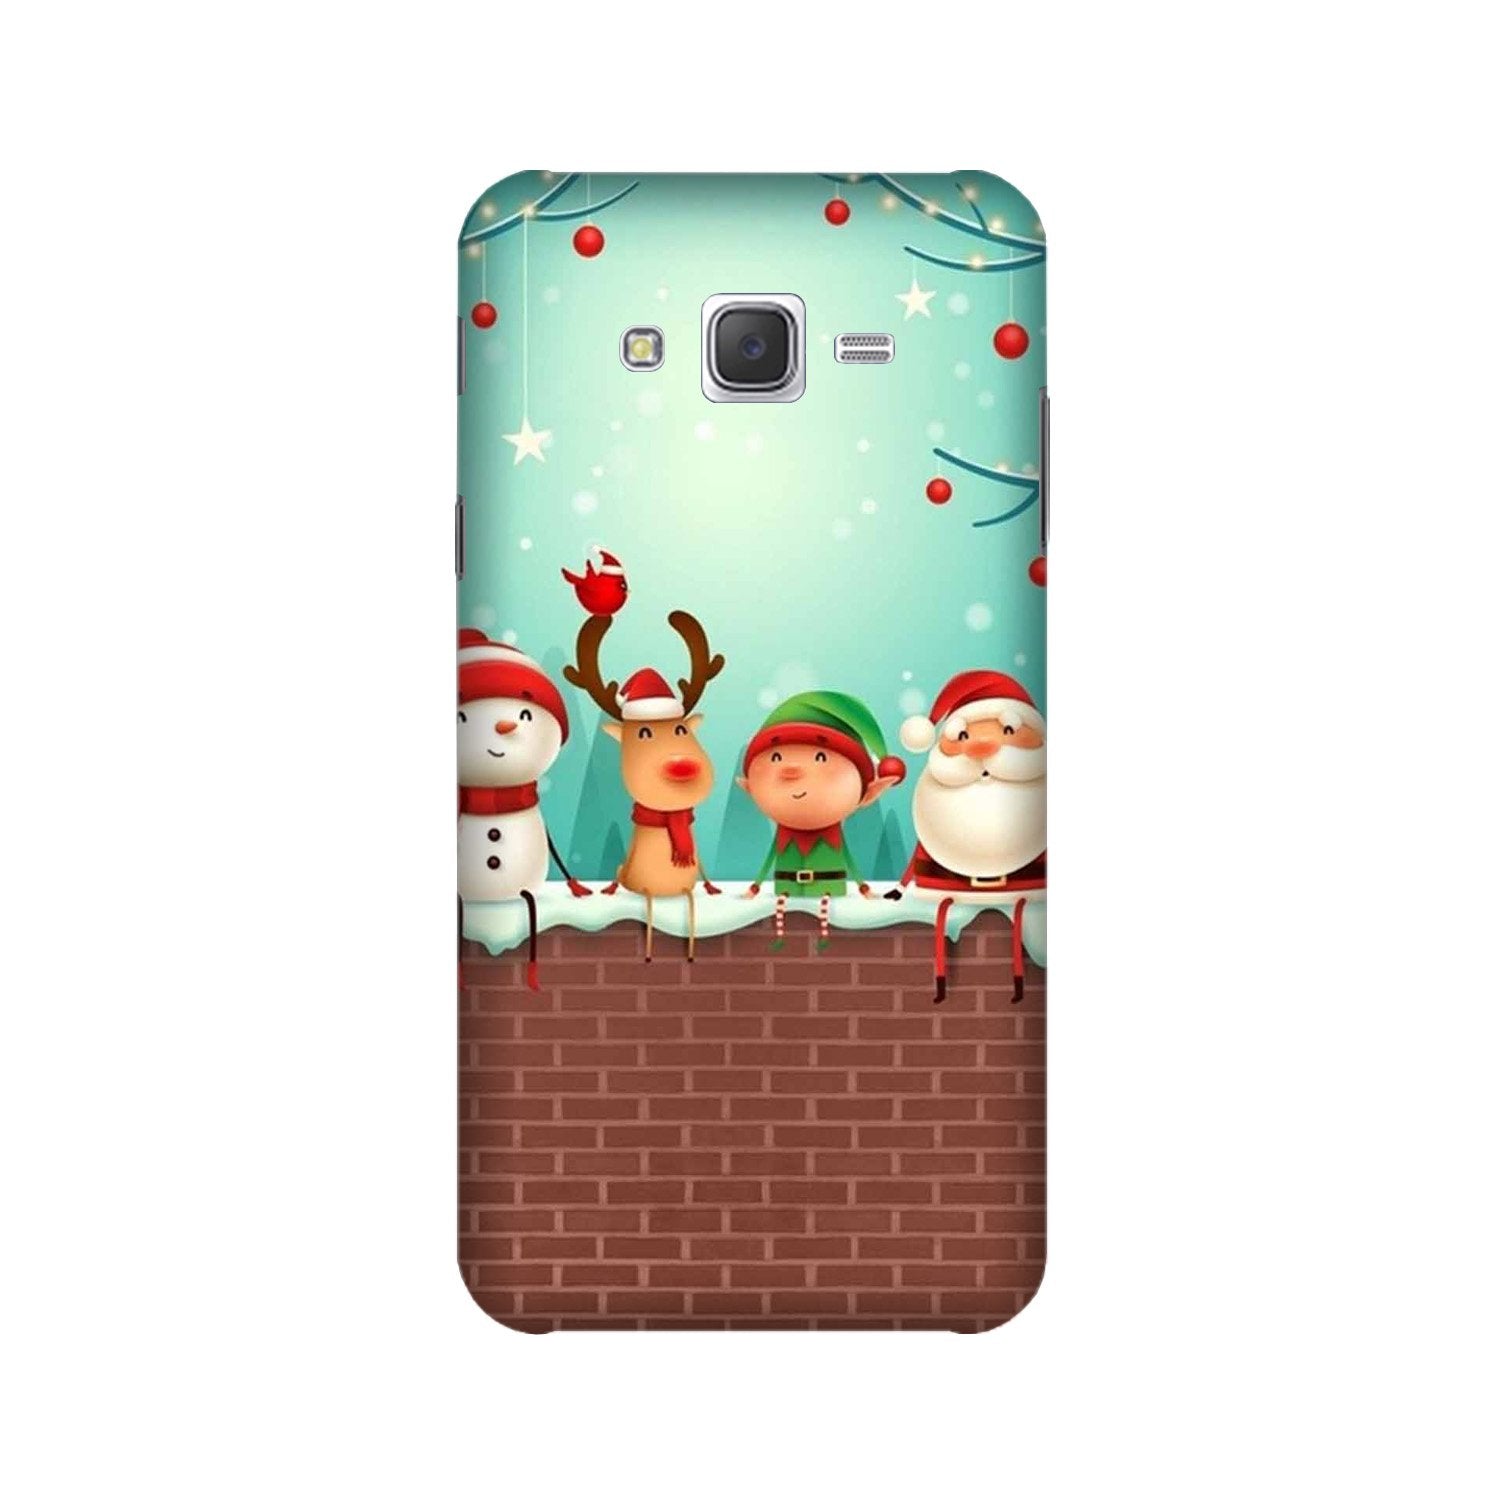 Santa Claus Mobile Back Case for Galaxy E5  (Design - 334)